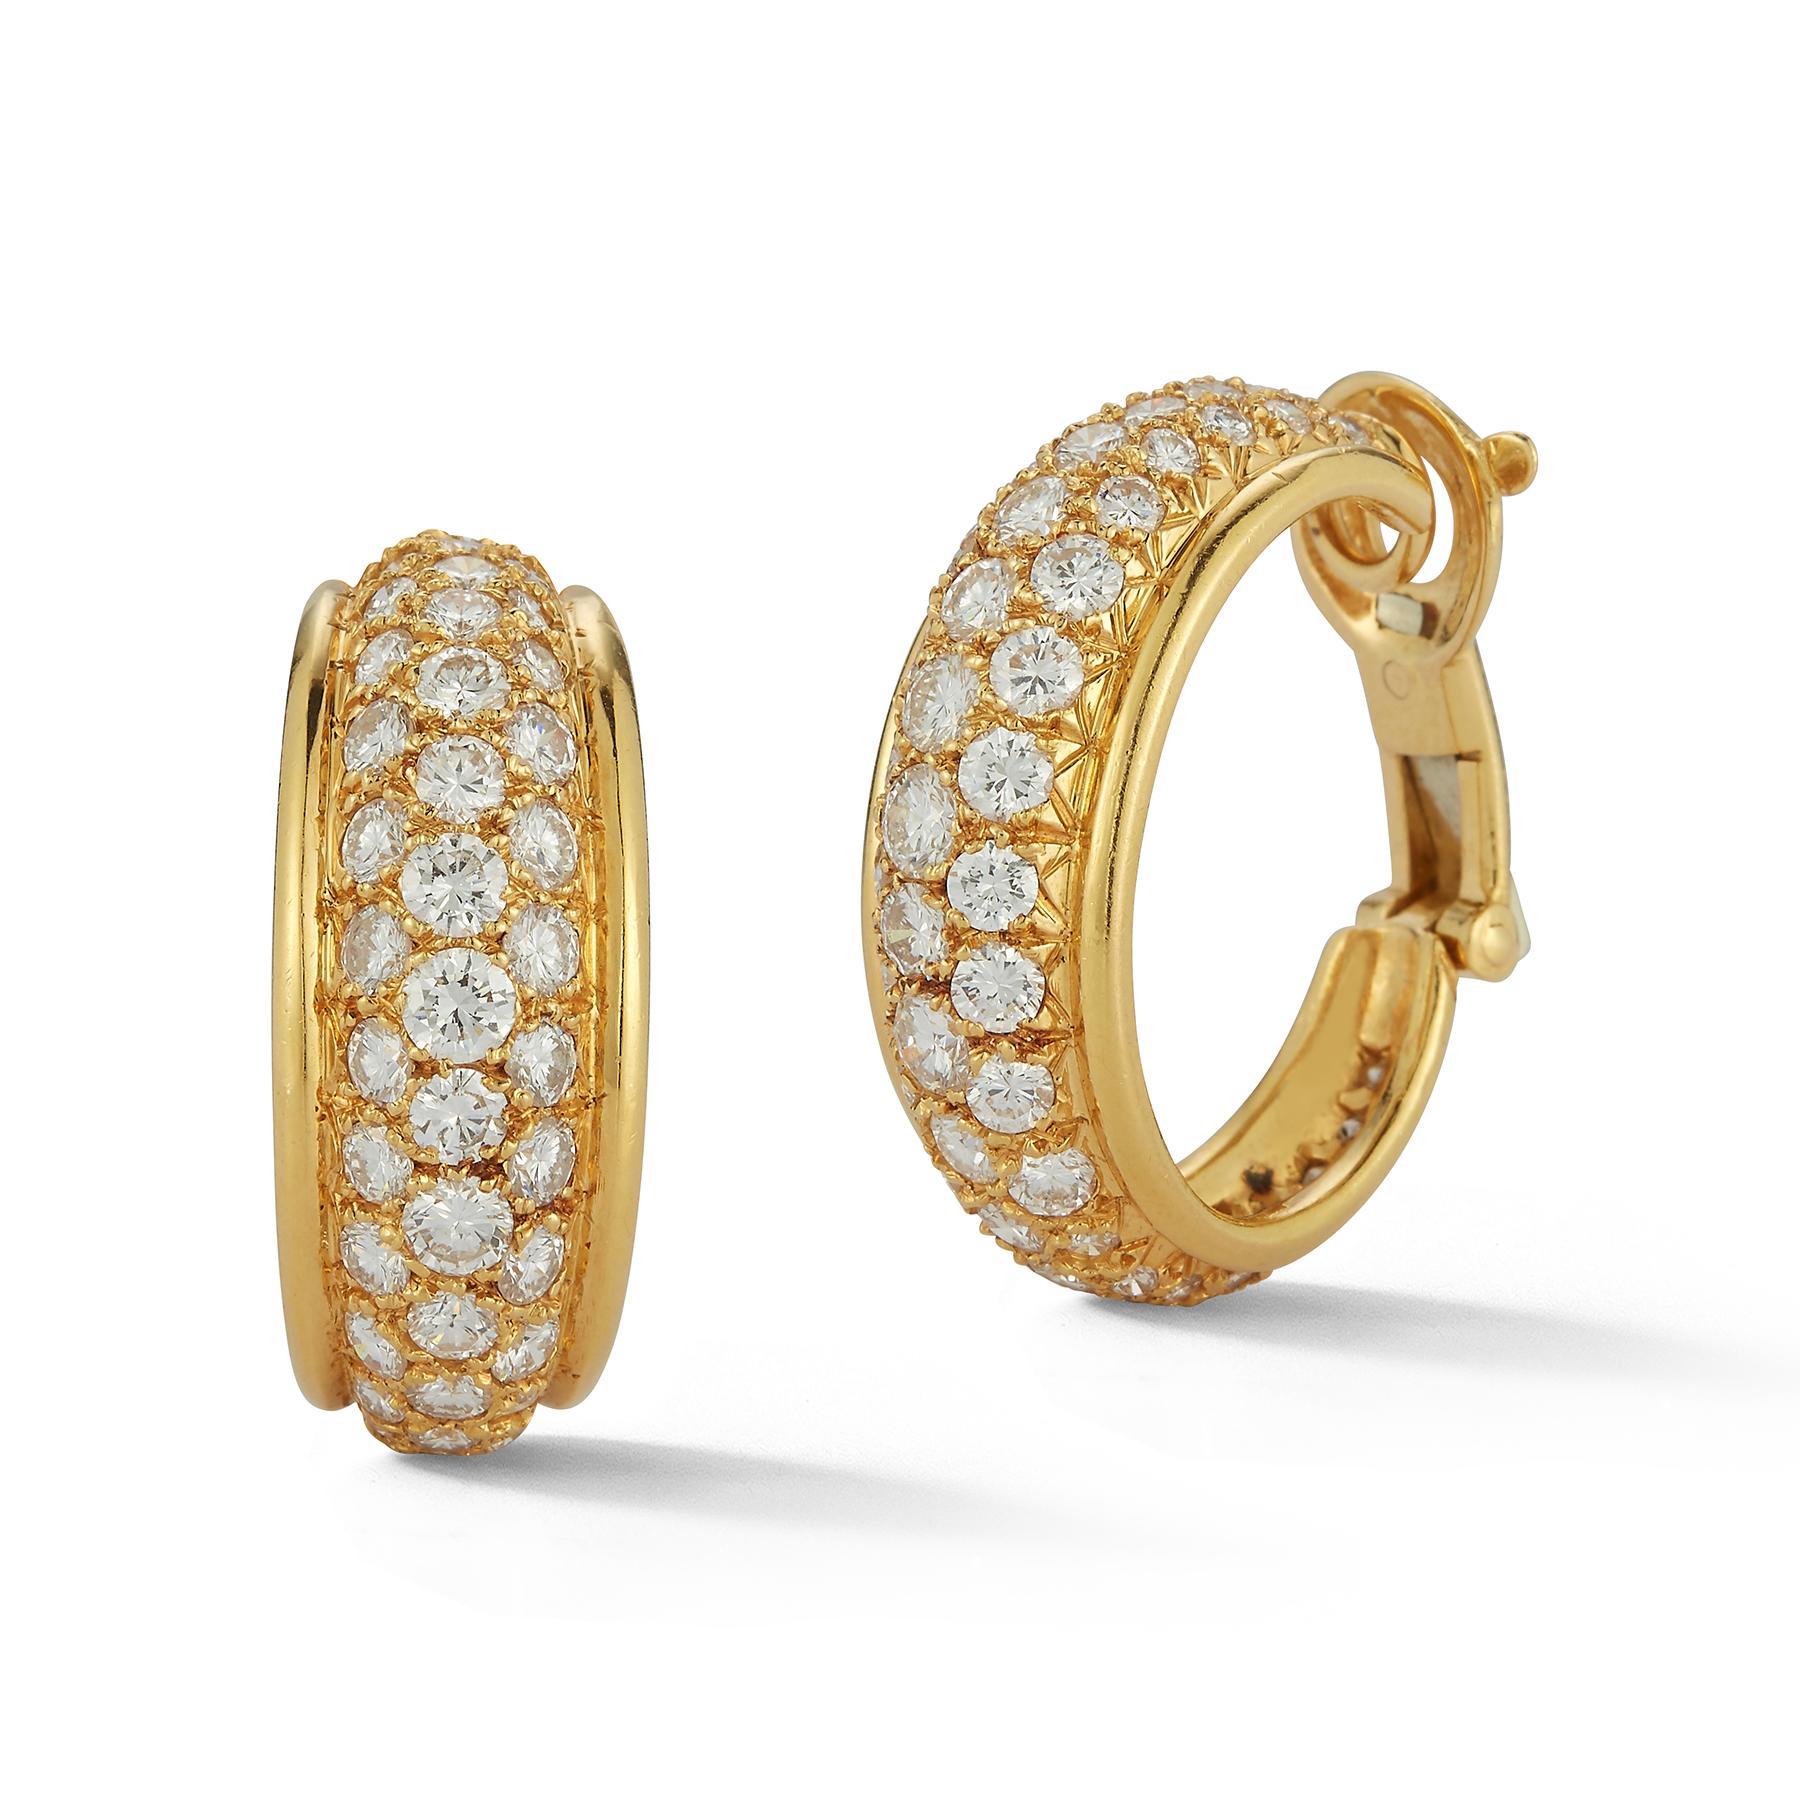 Van Cleef & Arpels Diamond Hoop Earrings, round brilliant cut diamonds set in 18K yellow gold

Measurements: 1